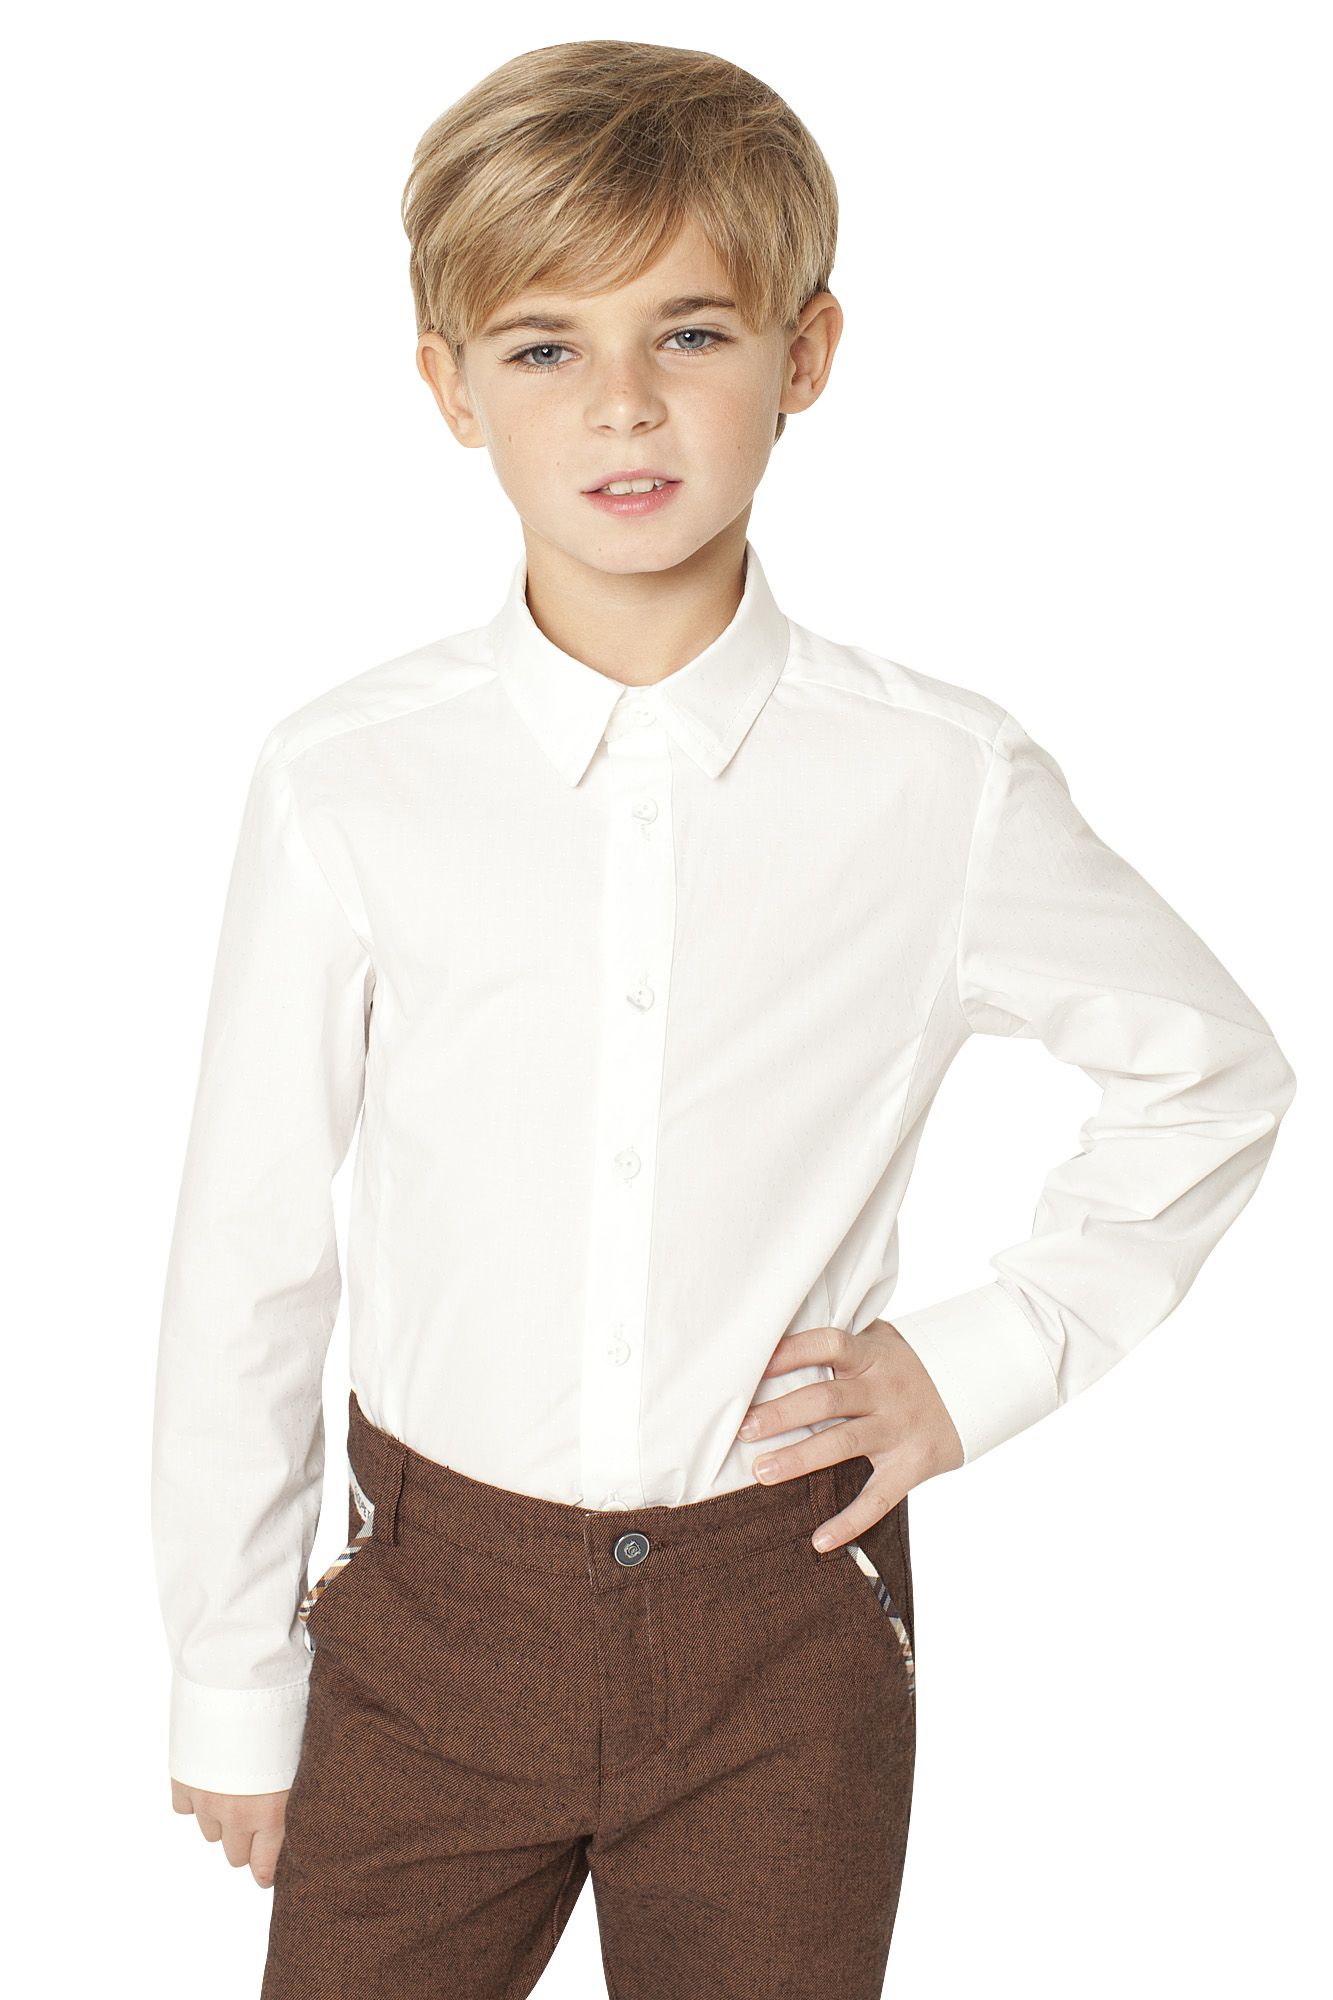 Произведение мальчик в белой рубашке. Рубашка 110 мальчик choupette. Рубашка 122 для мальчика choupette. Классическая рубашка белая на мальчике. Рубашка для мальчика 12 лет.